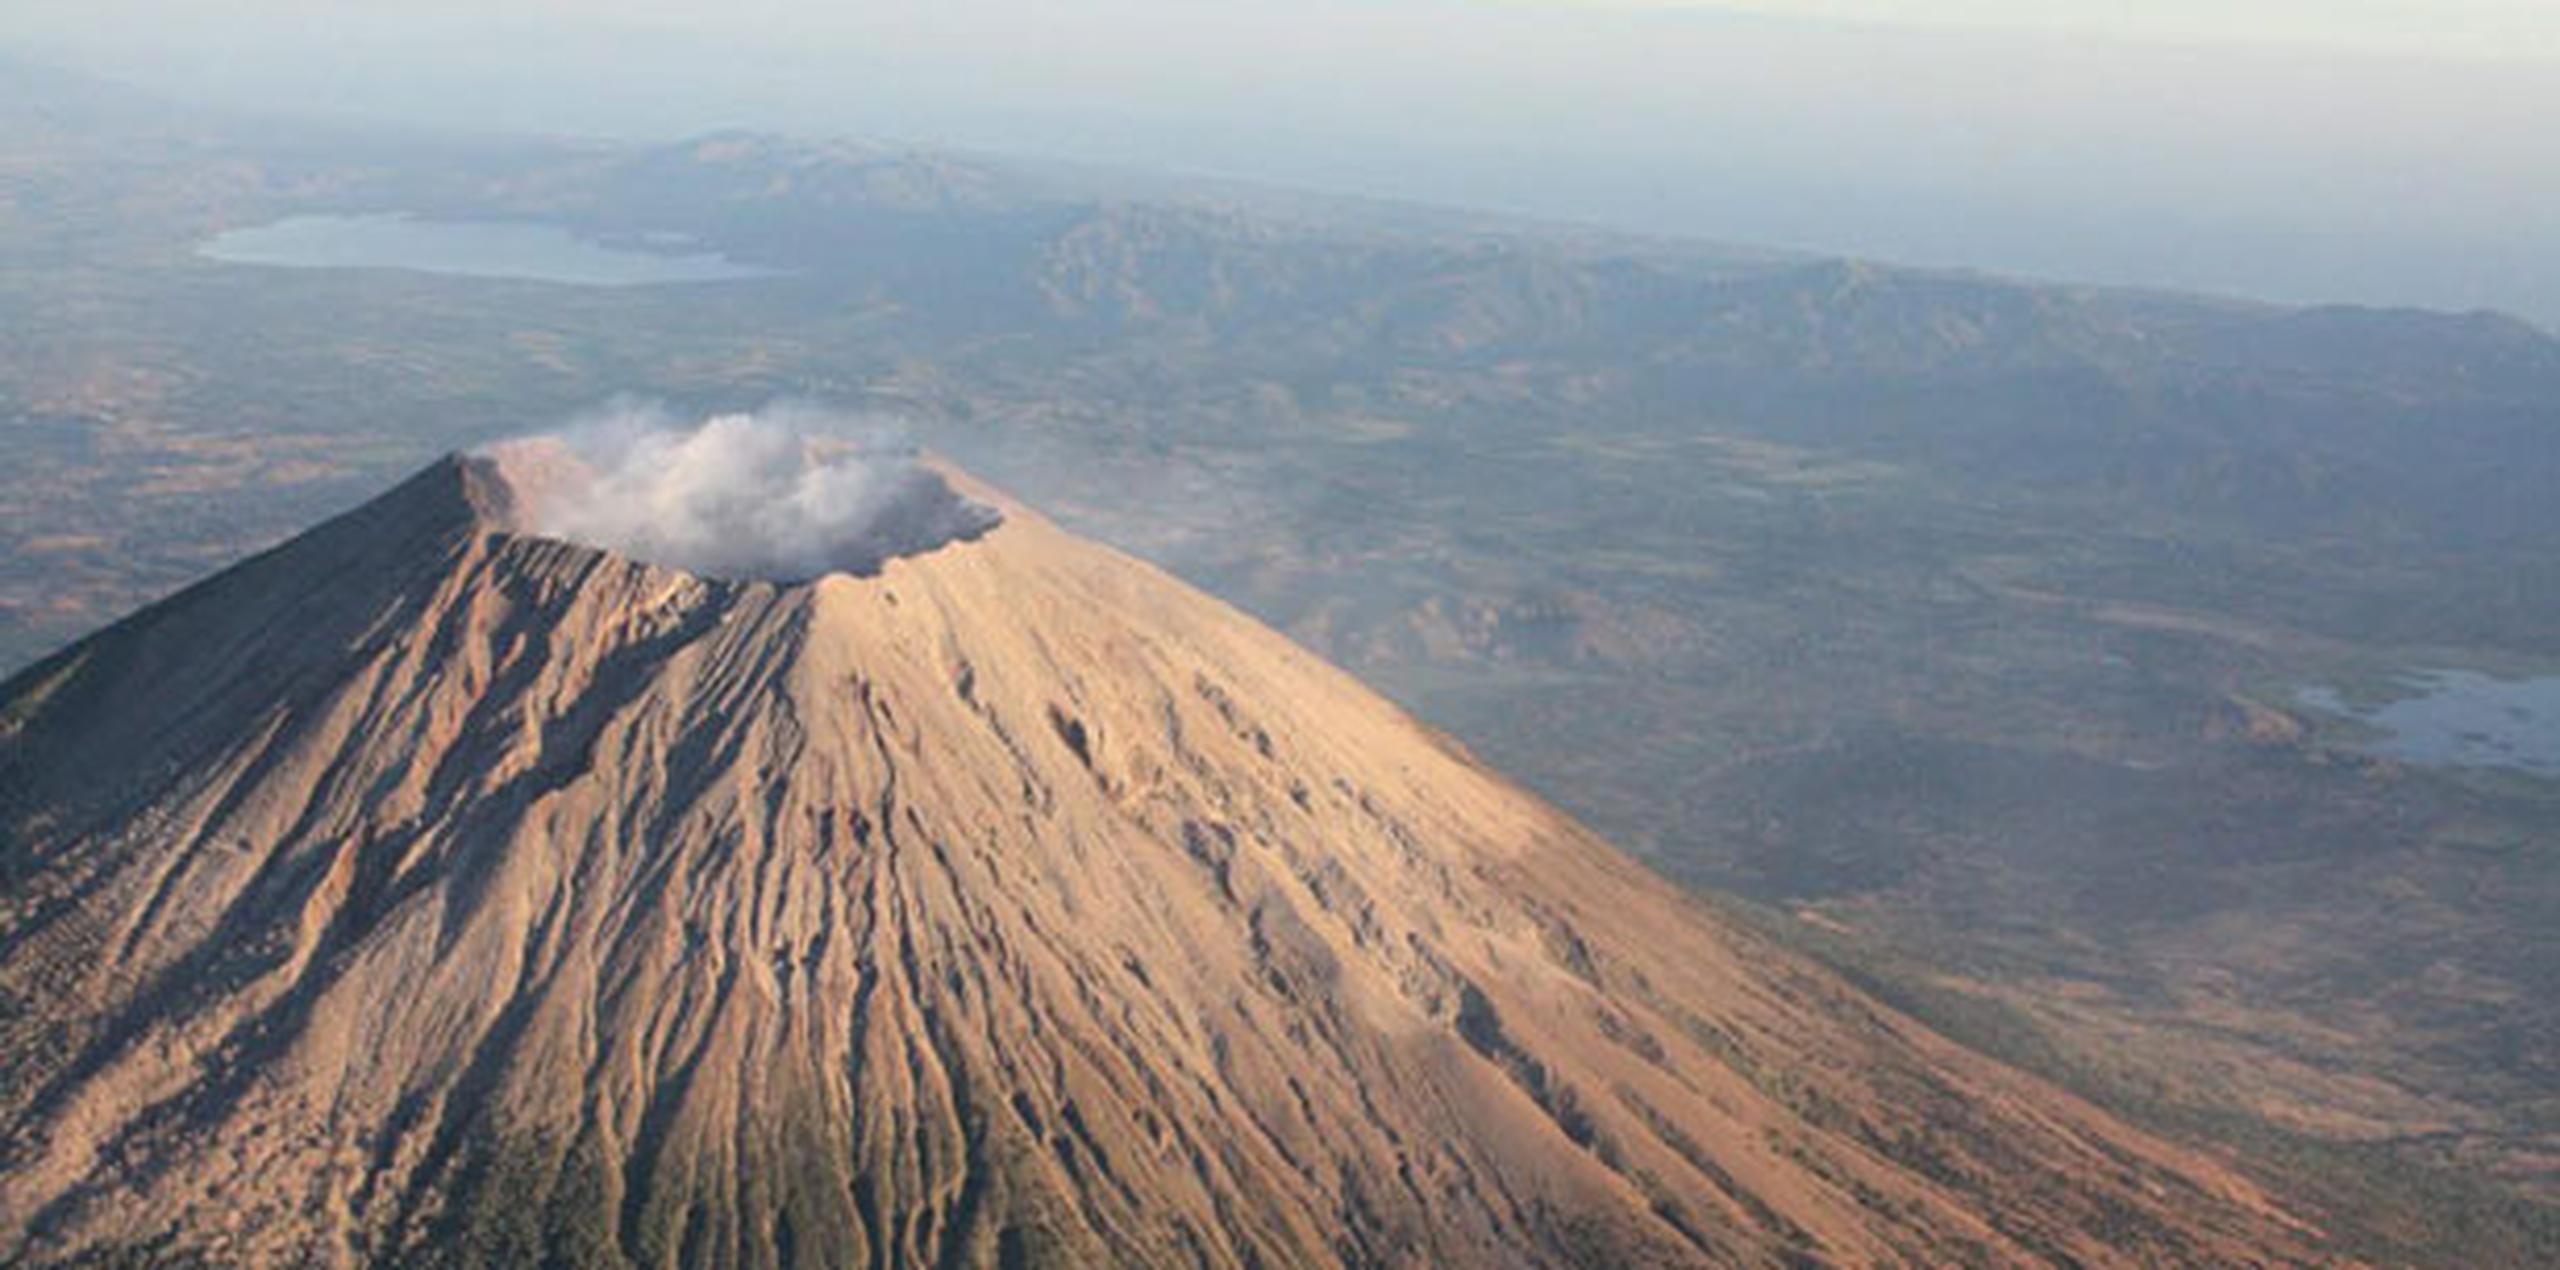 En El Salvador hay ocho volcanes activos y el 90 por ciento de su territorio está conformado por materiales volcánicos, de acuerdo con el Servicio Nacional de Estudios Territoriales de El Salvador. (EFE)